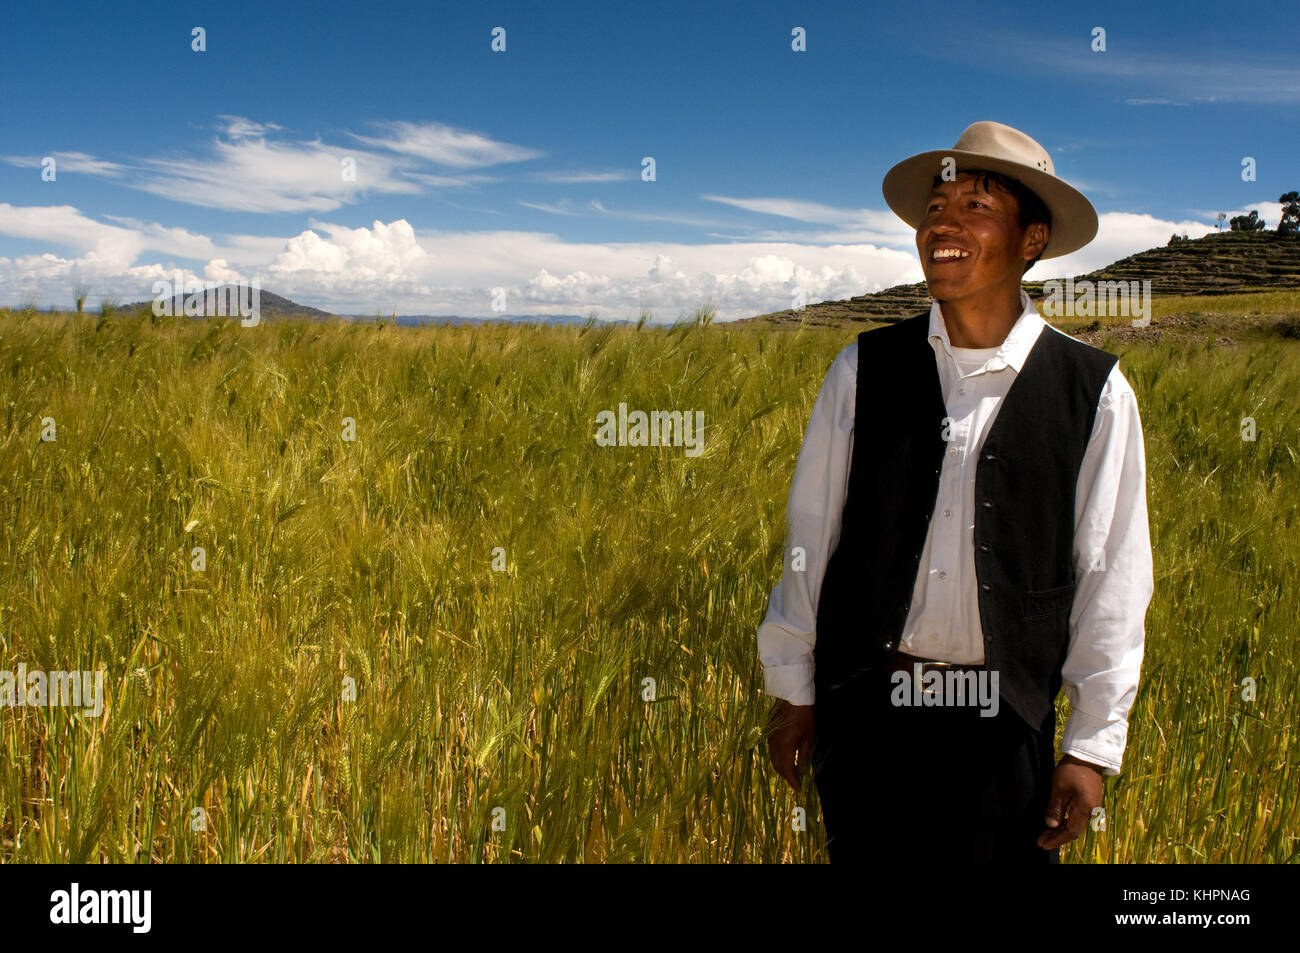 Un homme de l'île d'Amantaní vêtu de son costume régional typique. île amantani, lac Titicaca, Puno, Pérou Banque D'Images